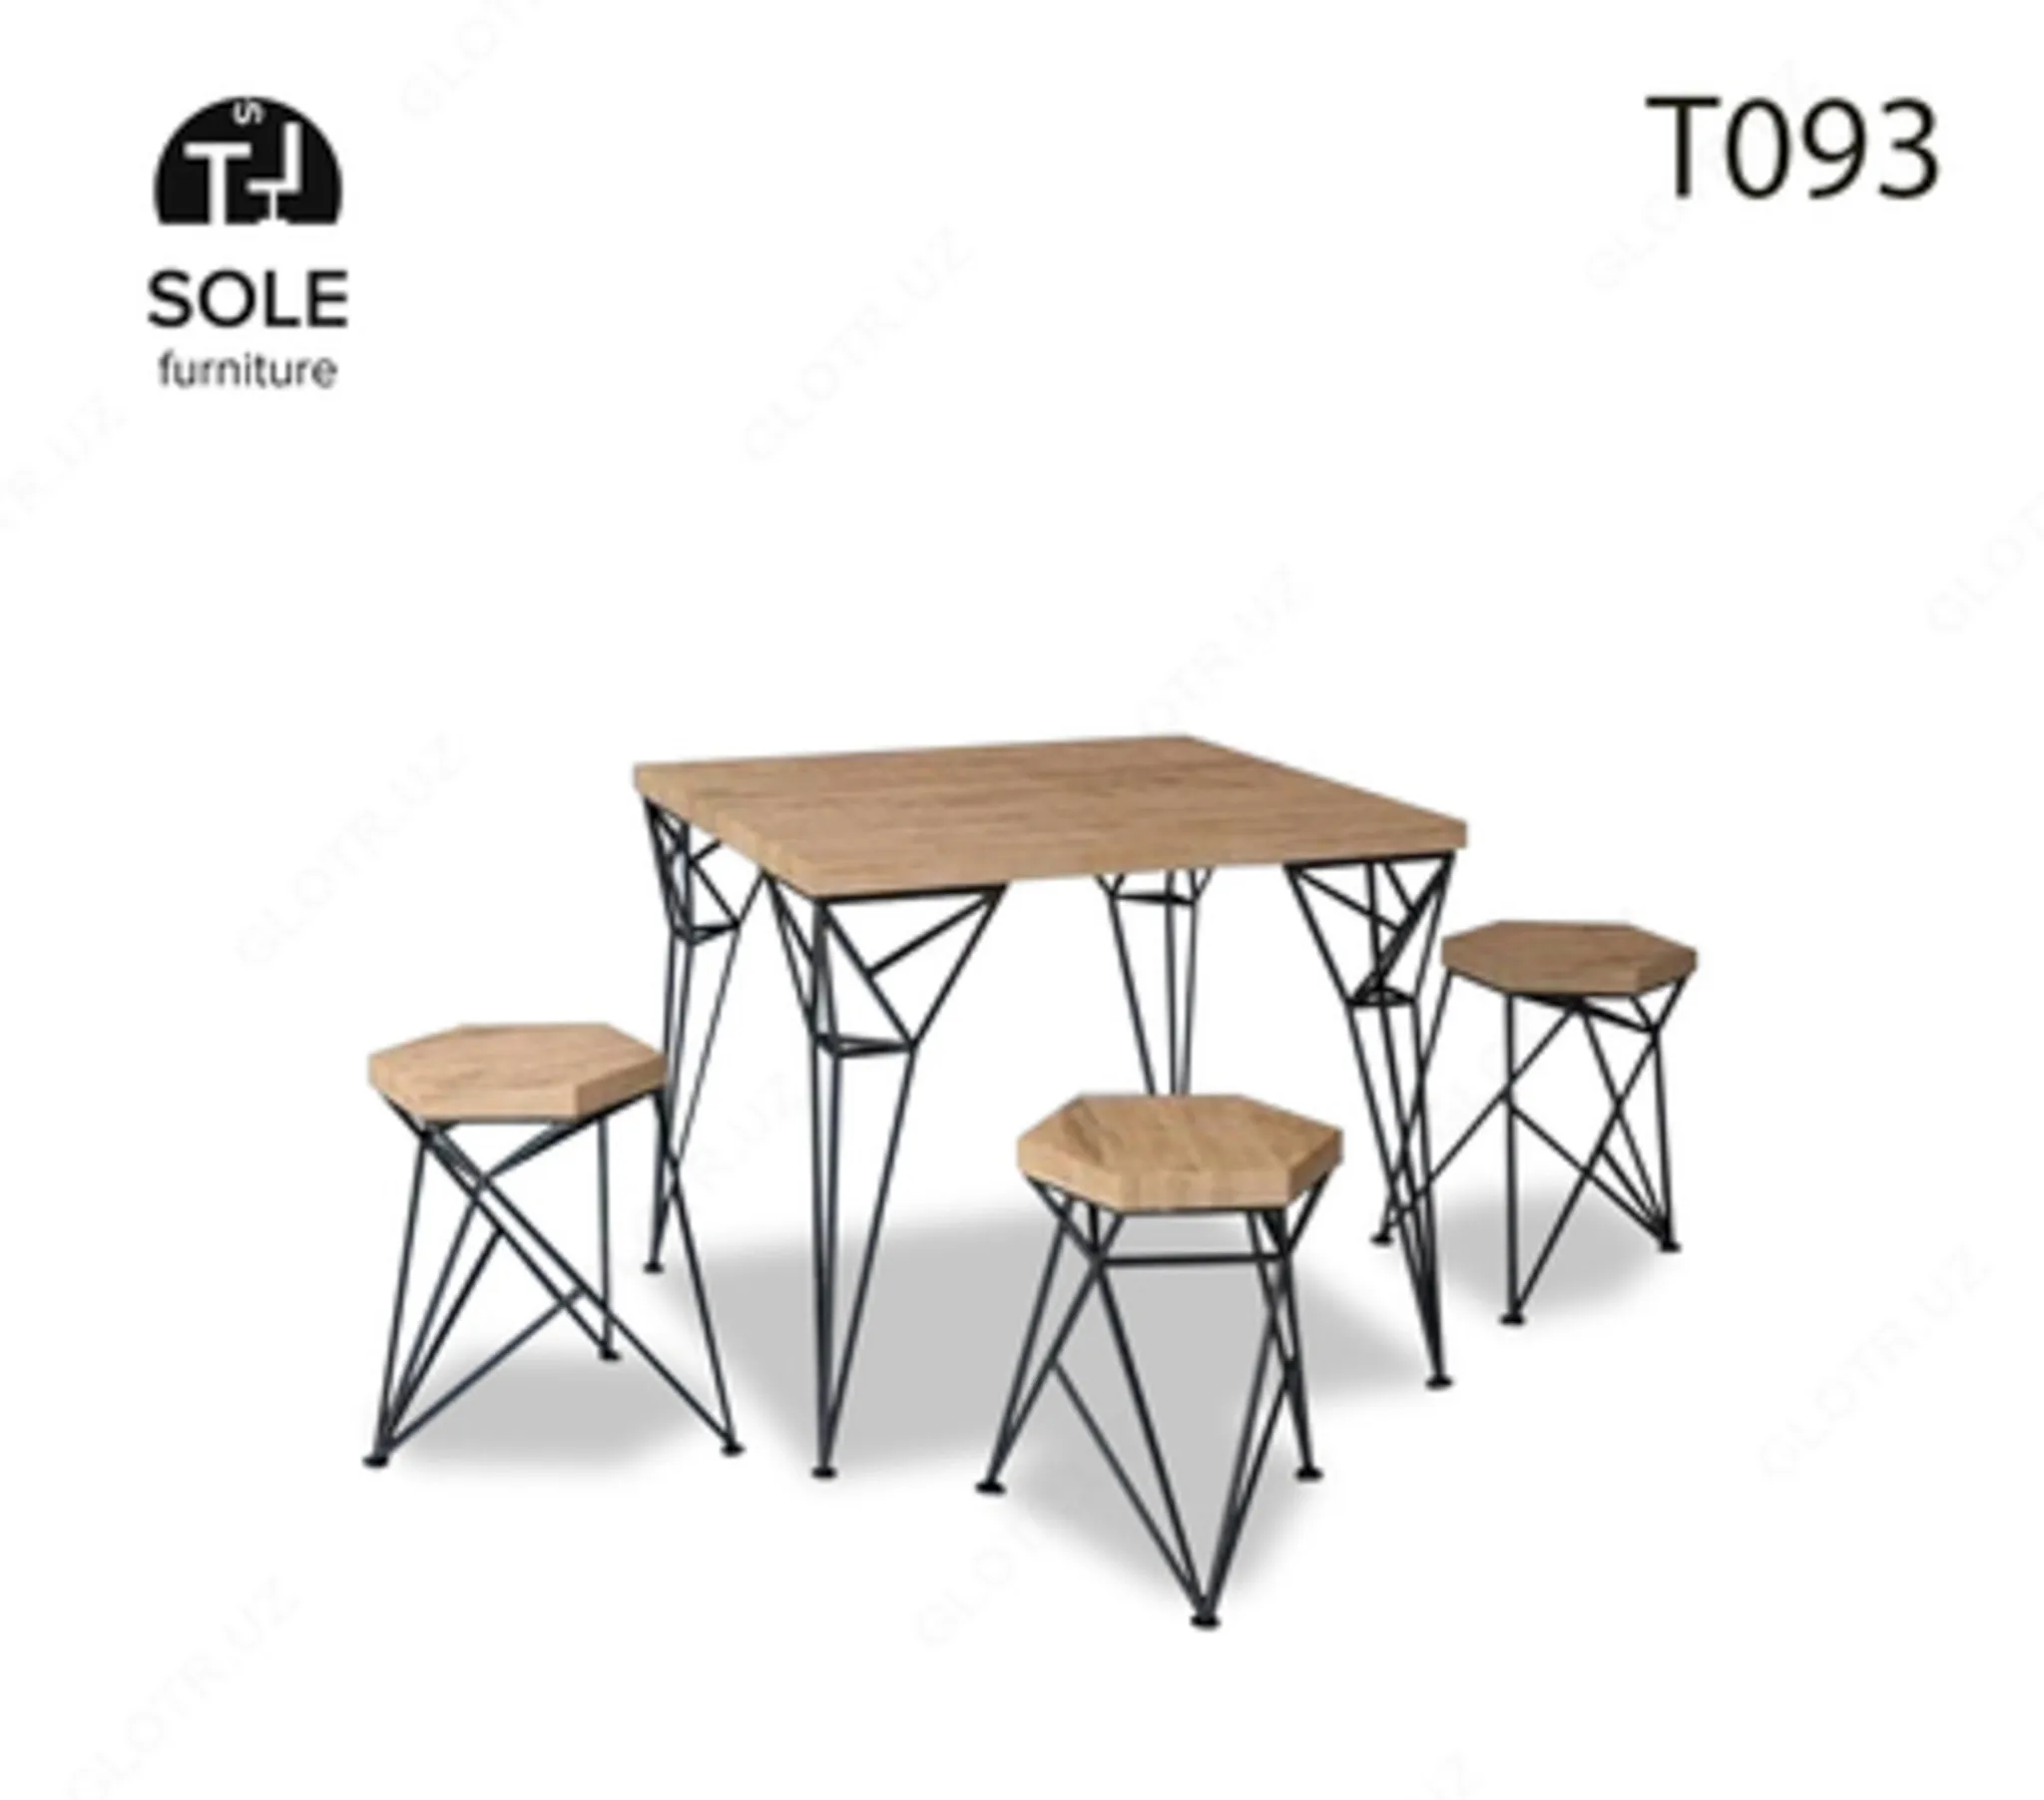 Комплект - стол и стулья, модель "T093"#1